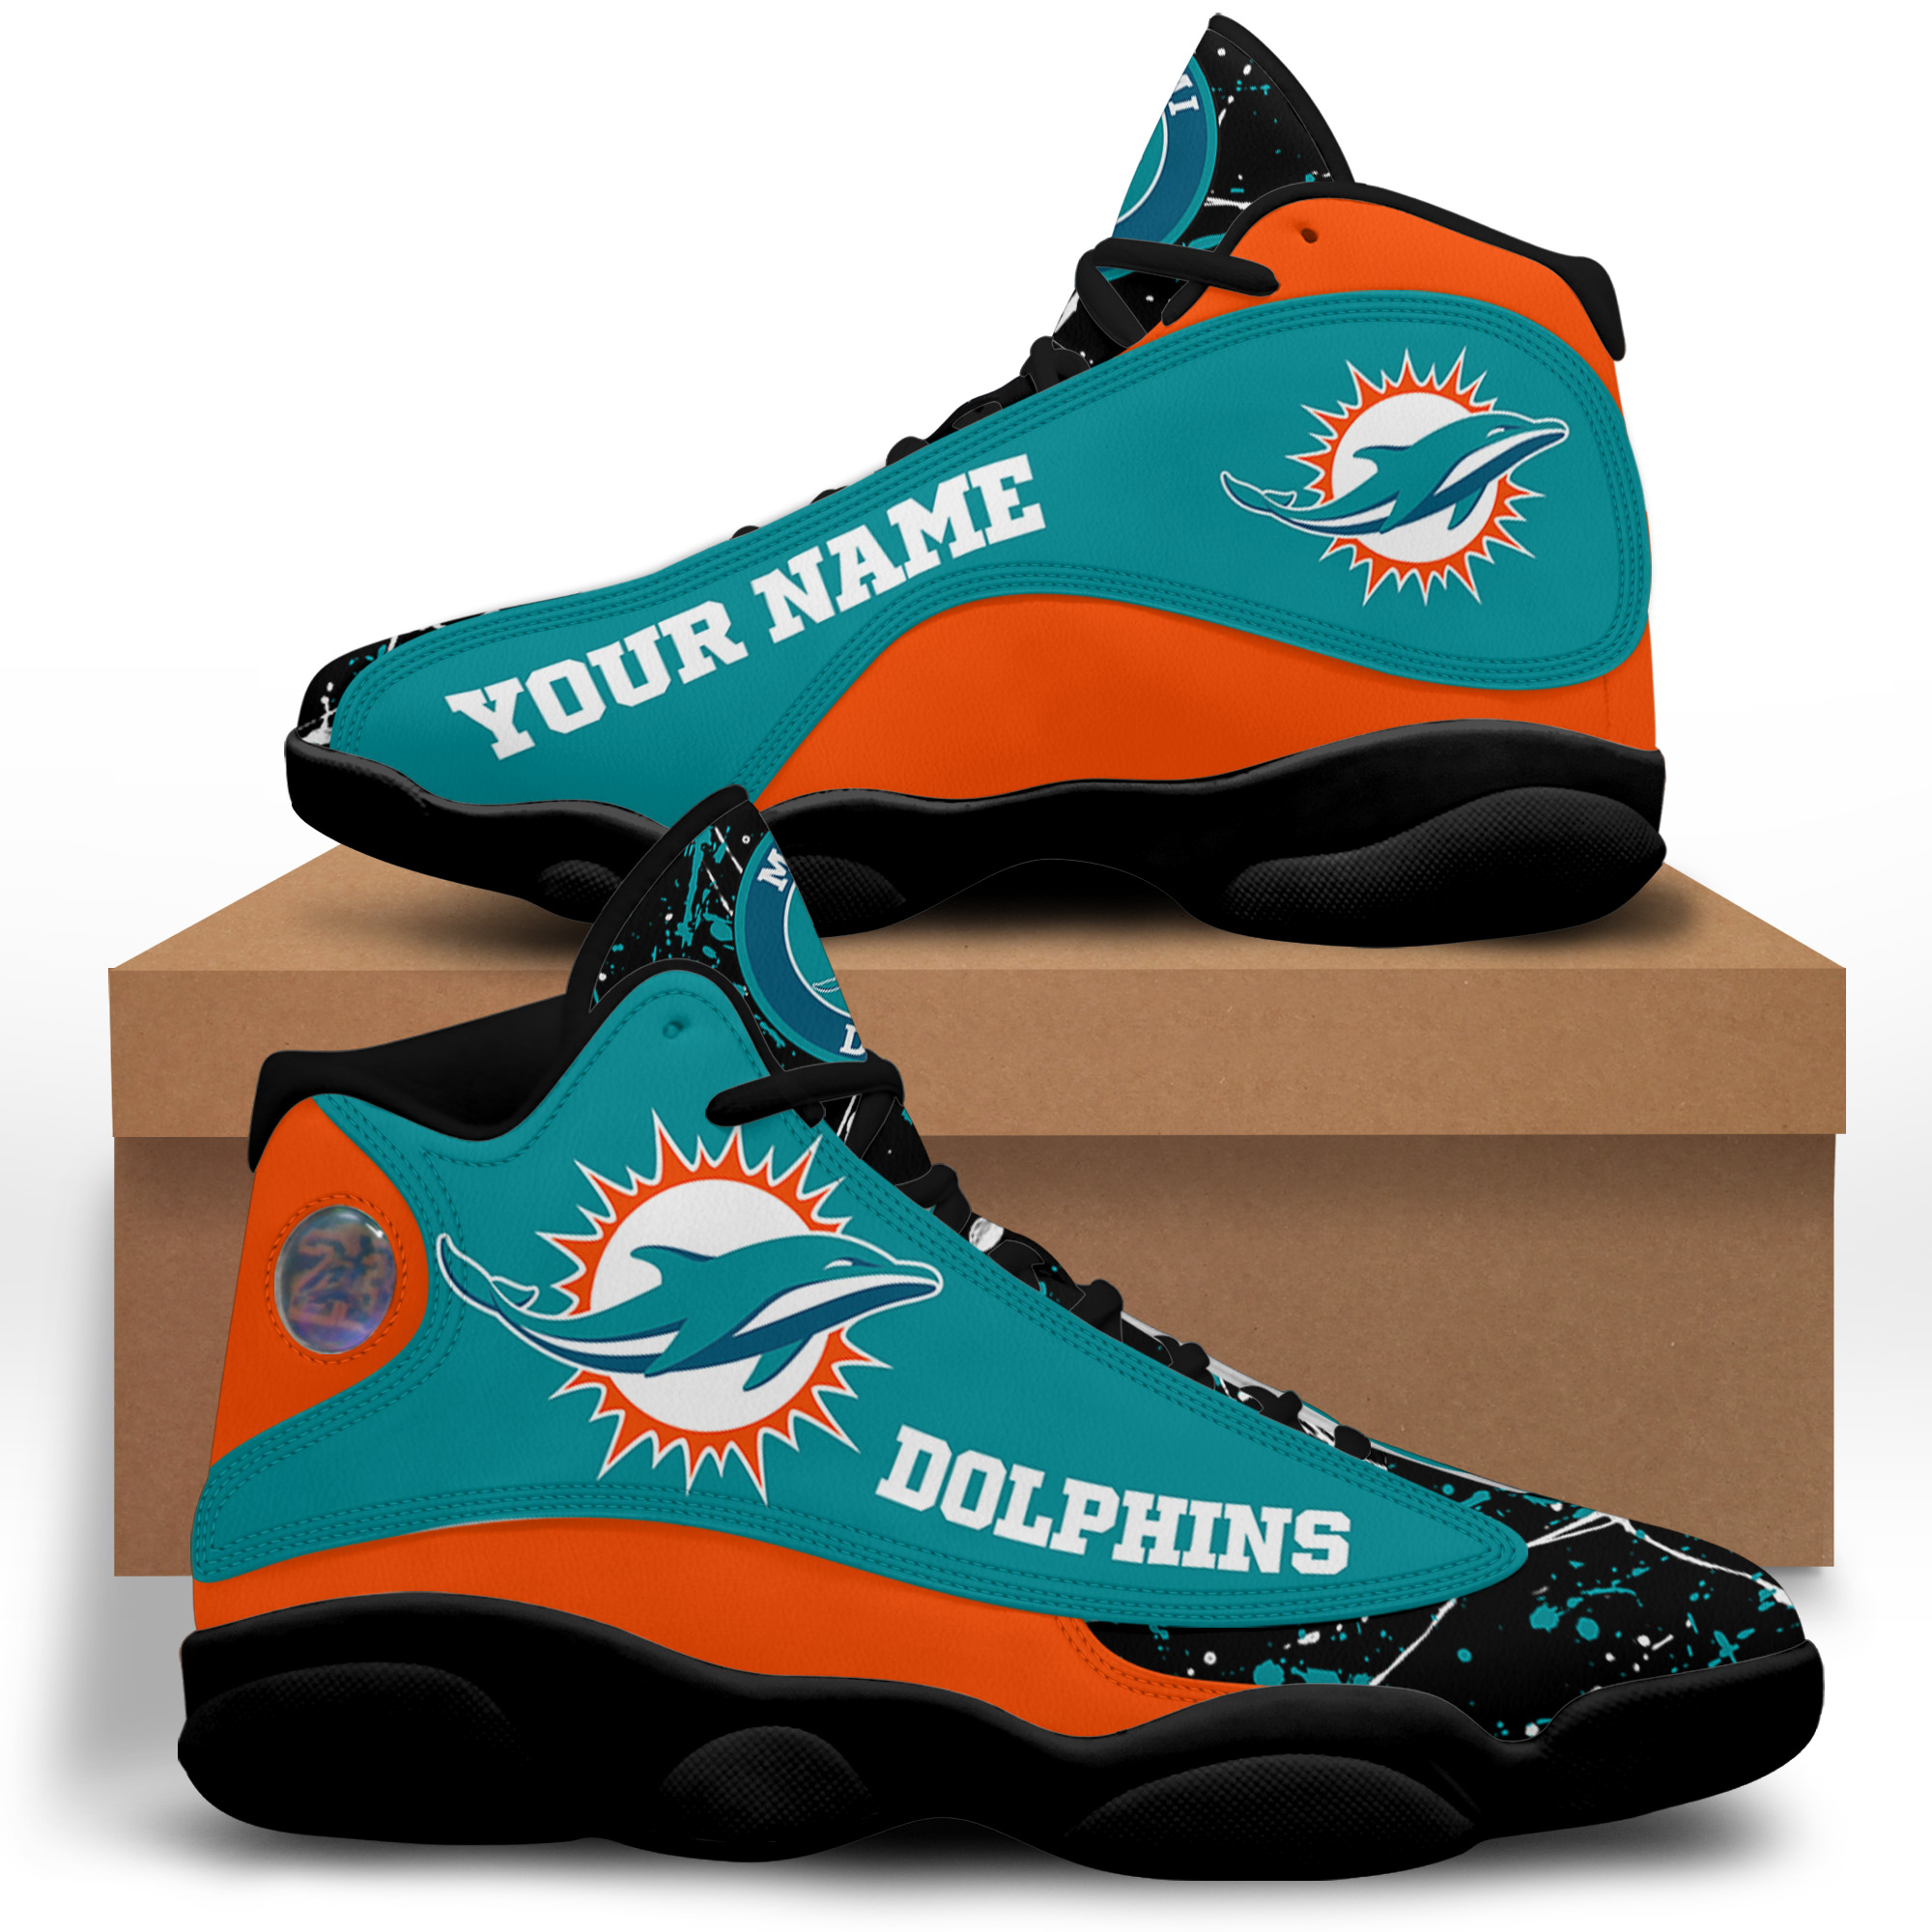 Custom Nba Miami Heat Air Jordan 13 Shoes - It's RobinLoriNOW!